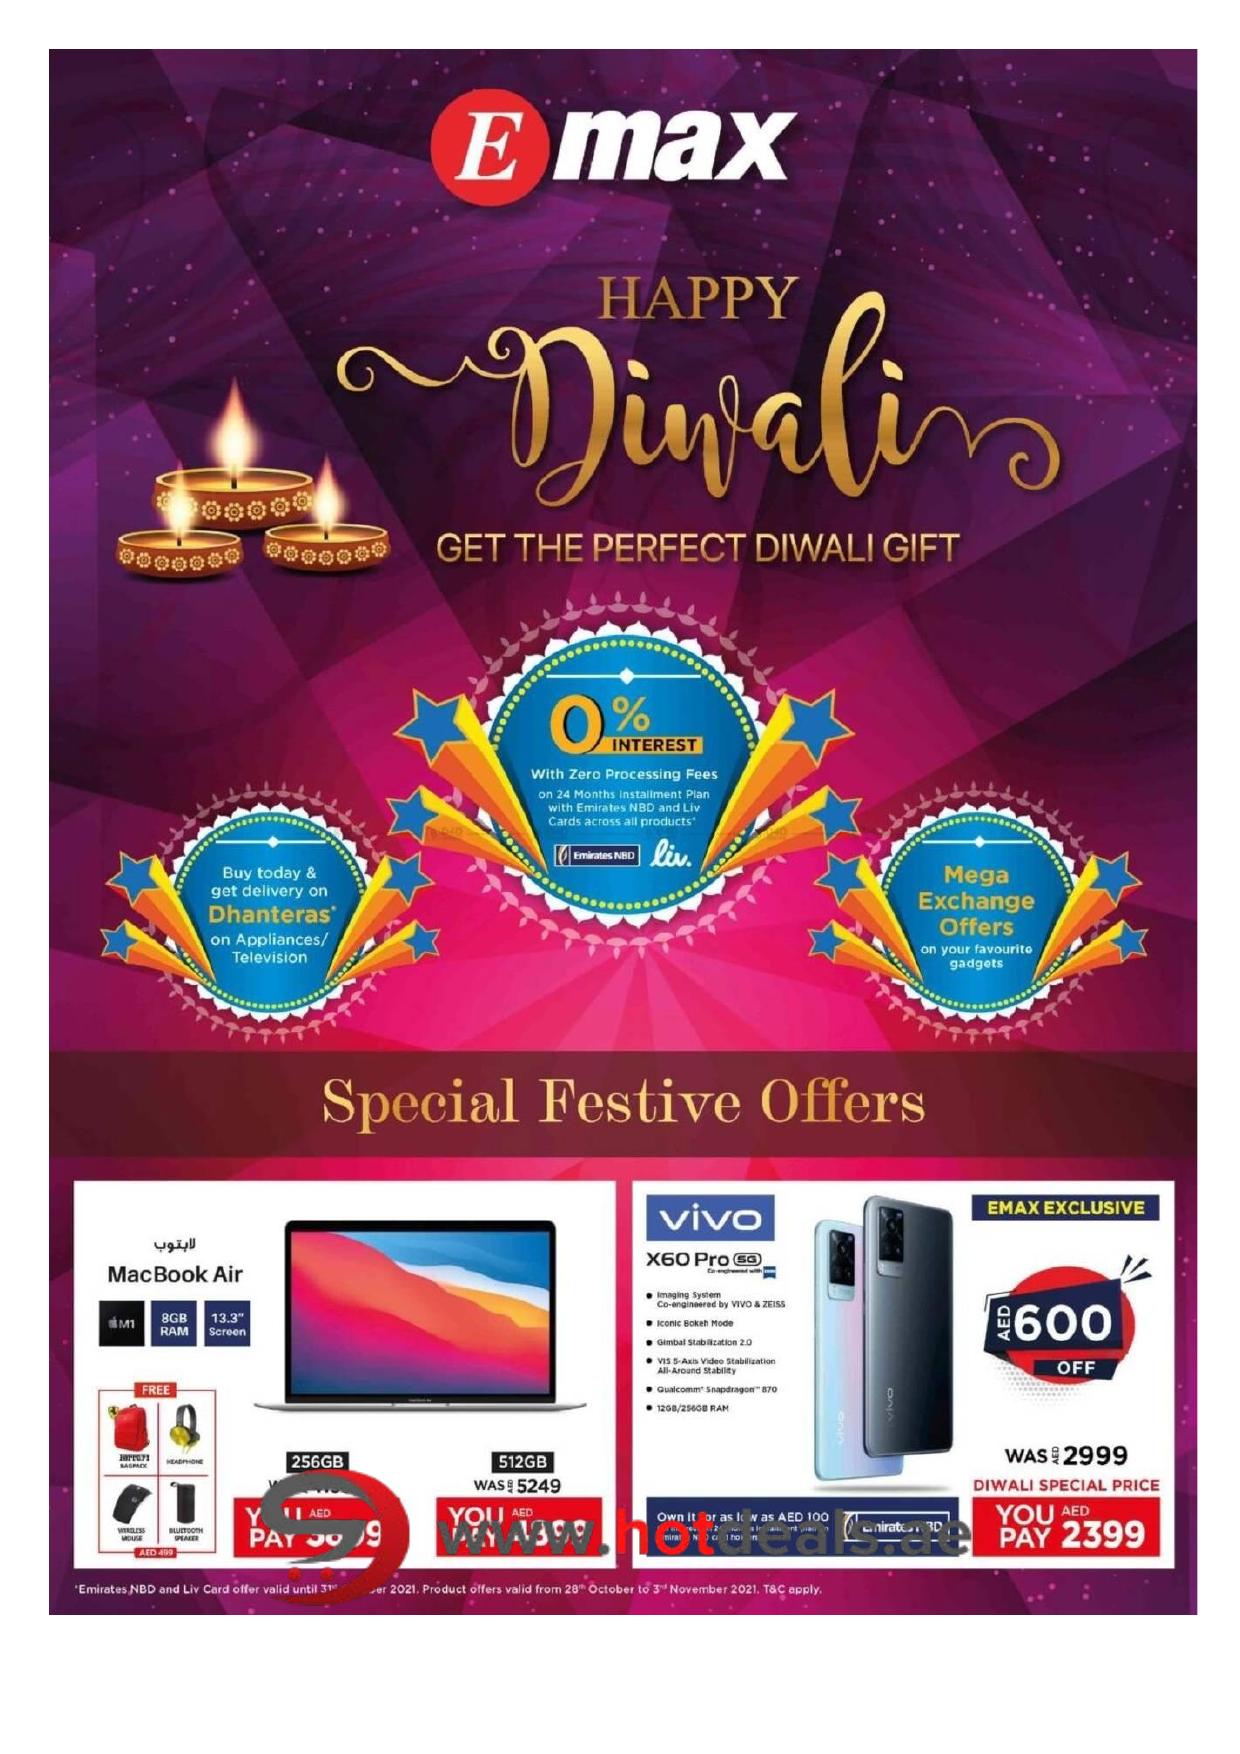 <p><span style="font-size: 18px;"><font color="#424242">Diwali Offers</font></span><br></p>